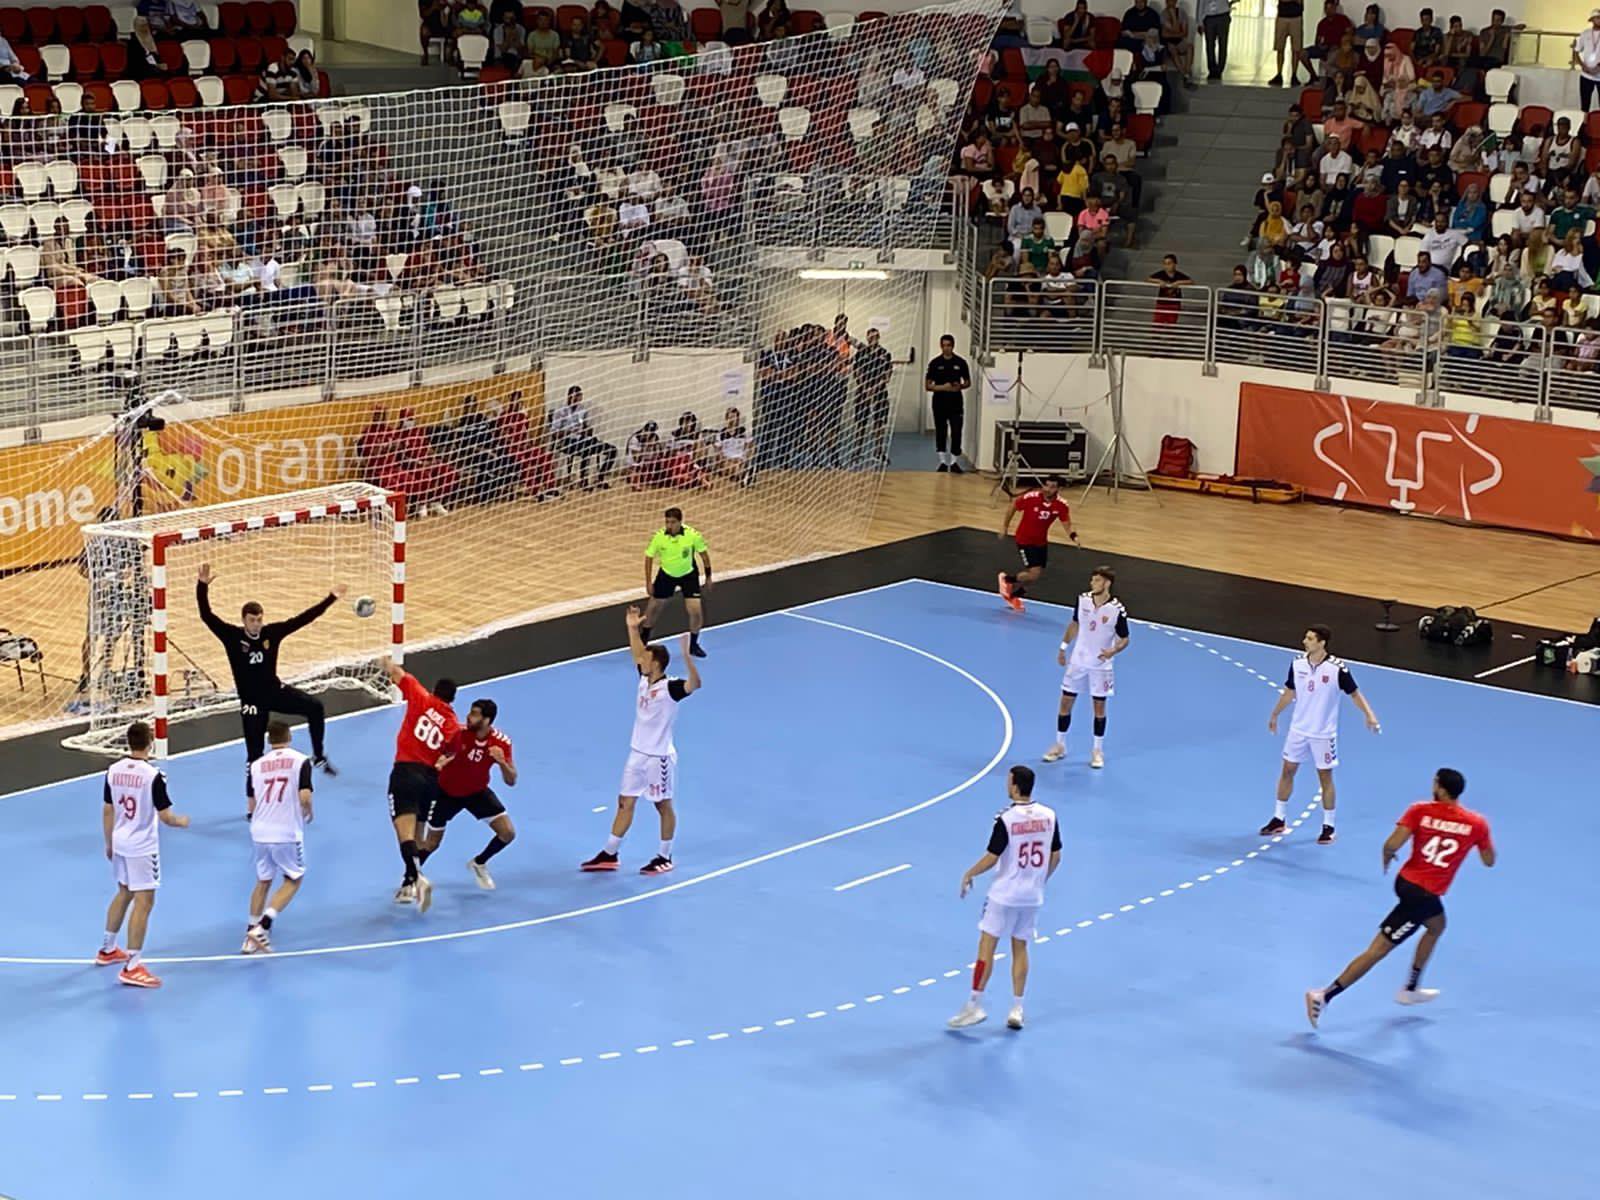 منتخب كرة اليد يهزم مقدونيا ويتأهل لنهائي دورة ألعاب البحر المتوسط